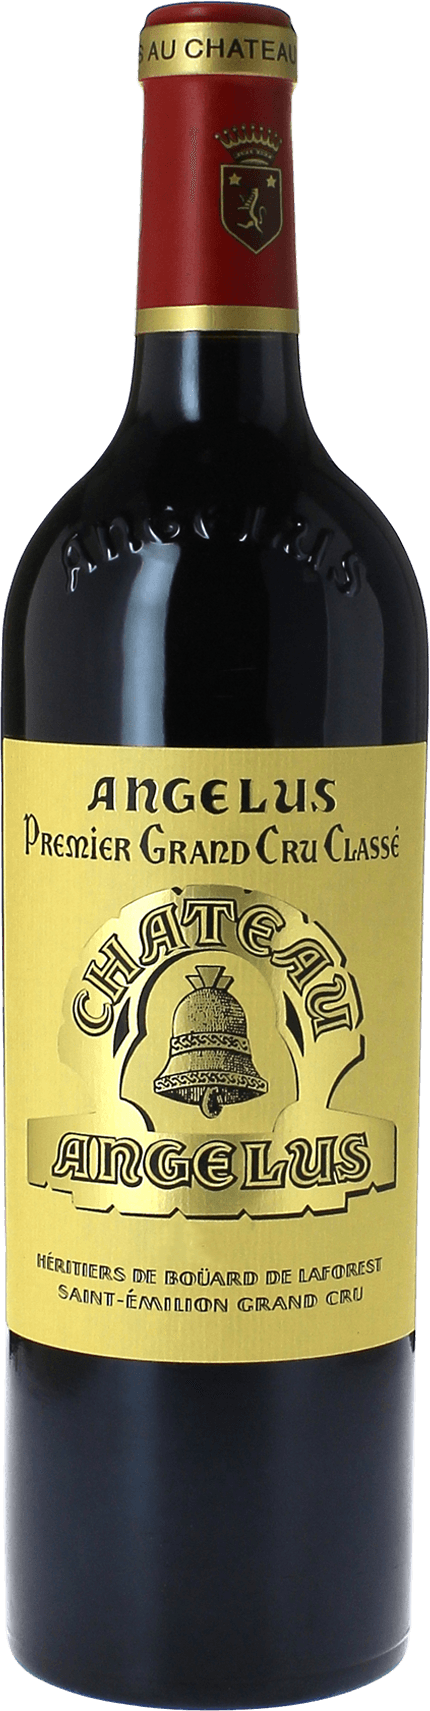 Angelus 1988 1er Grand cru B class Saint-Emilion, Bordeaux rouge